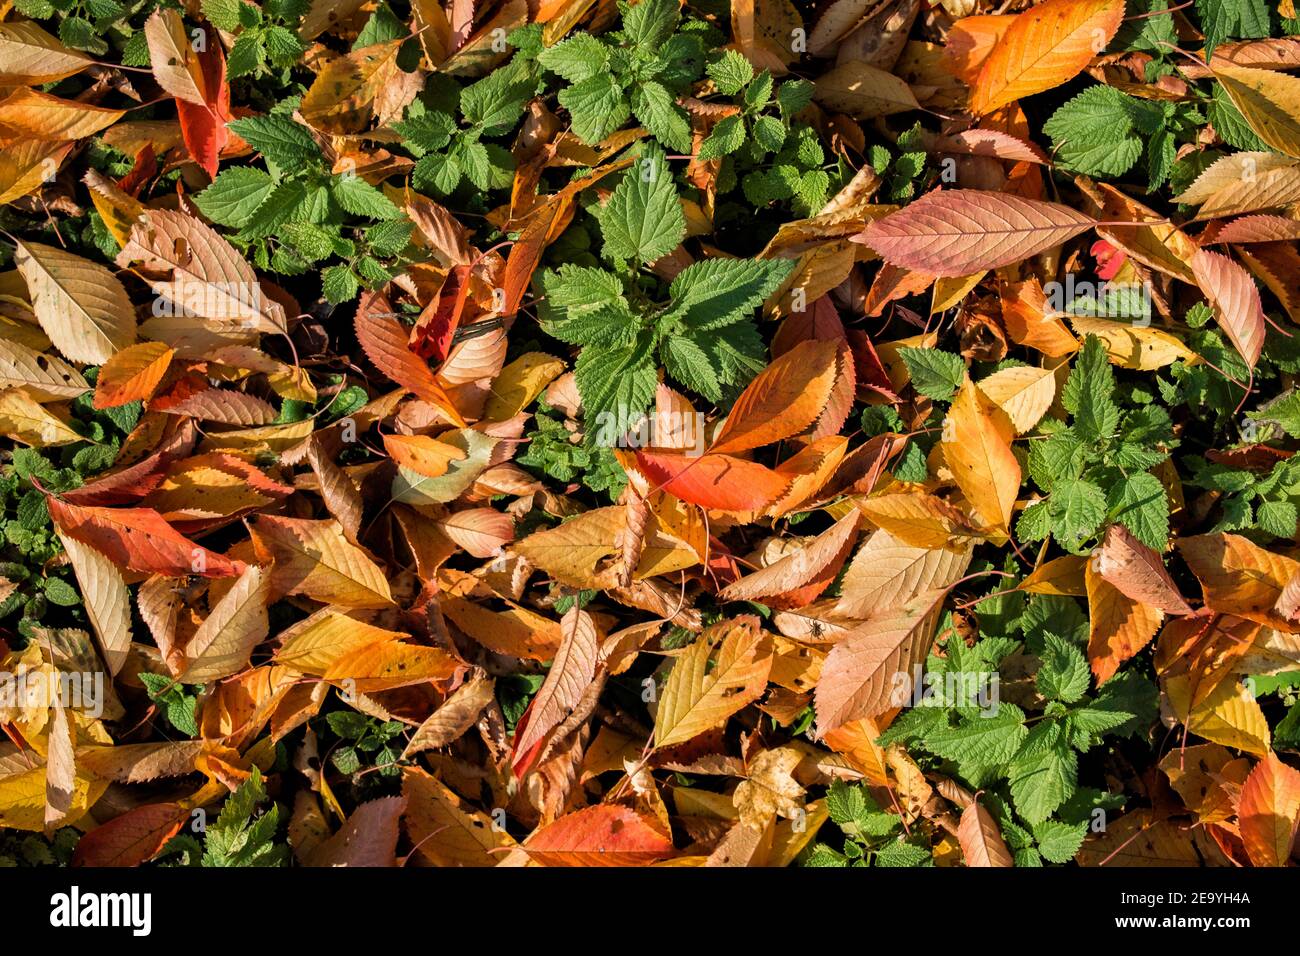 Textura natural de hojas de cereza caídas y brotes jóvenes de ortiga Foto de stock